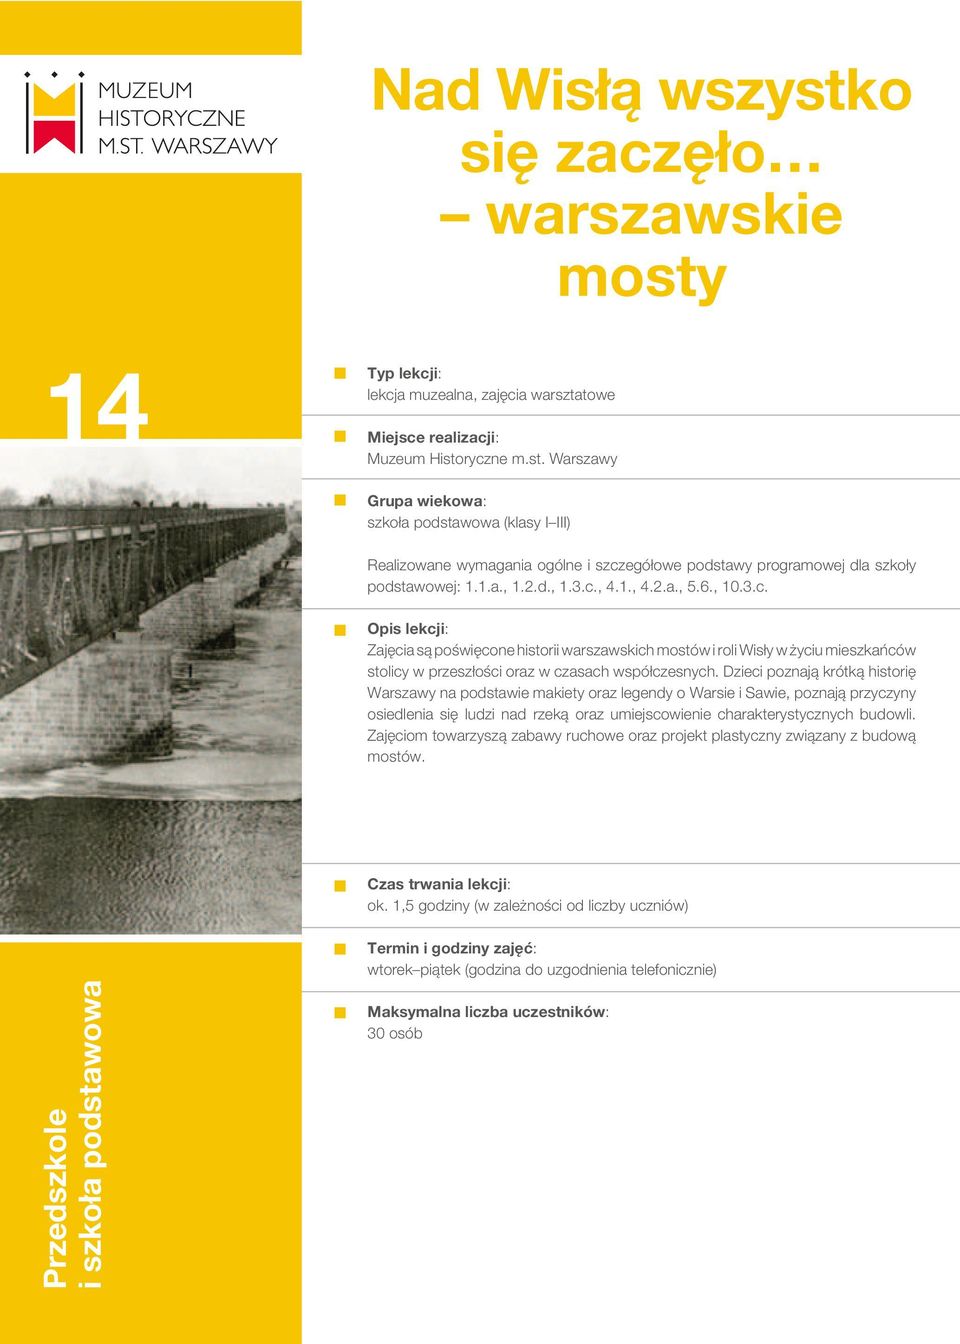 Dzieci poznają krótką historię Warszawy na podstawie makiety oraz legendy o Warsie i Sawie, poznają przyczyny osiedlenia się ludzi nad rzeką oraz umiejscowienie charakterystycznych budowli.